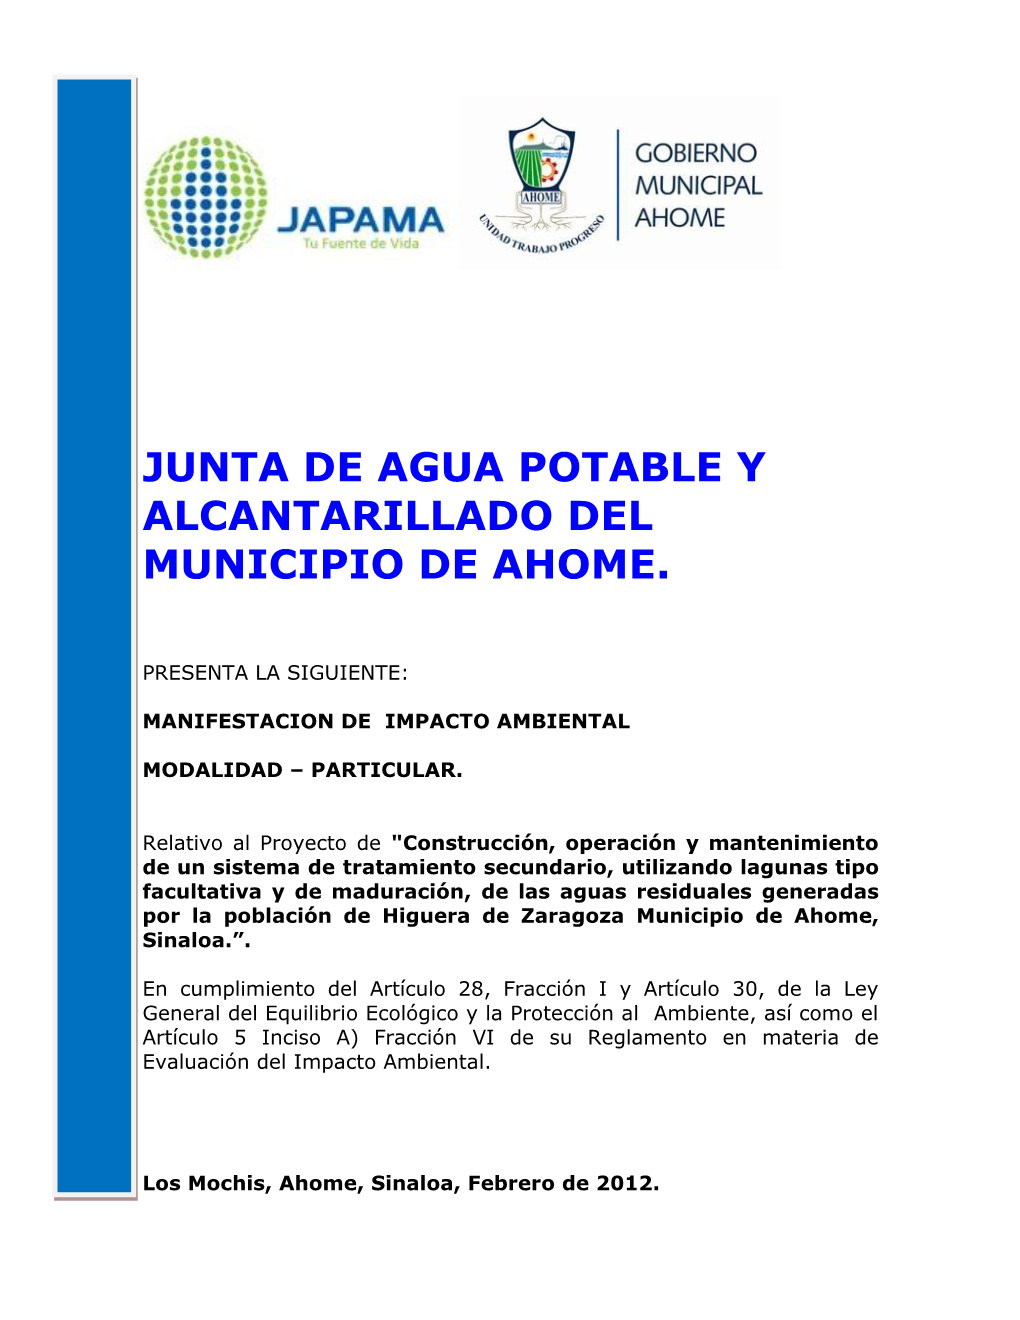 Junta De Agua Potable Y Alcantarillado Del Municipio De Ahome